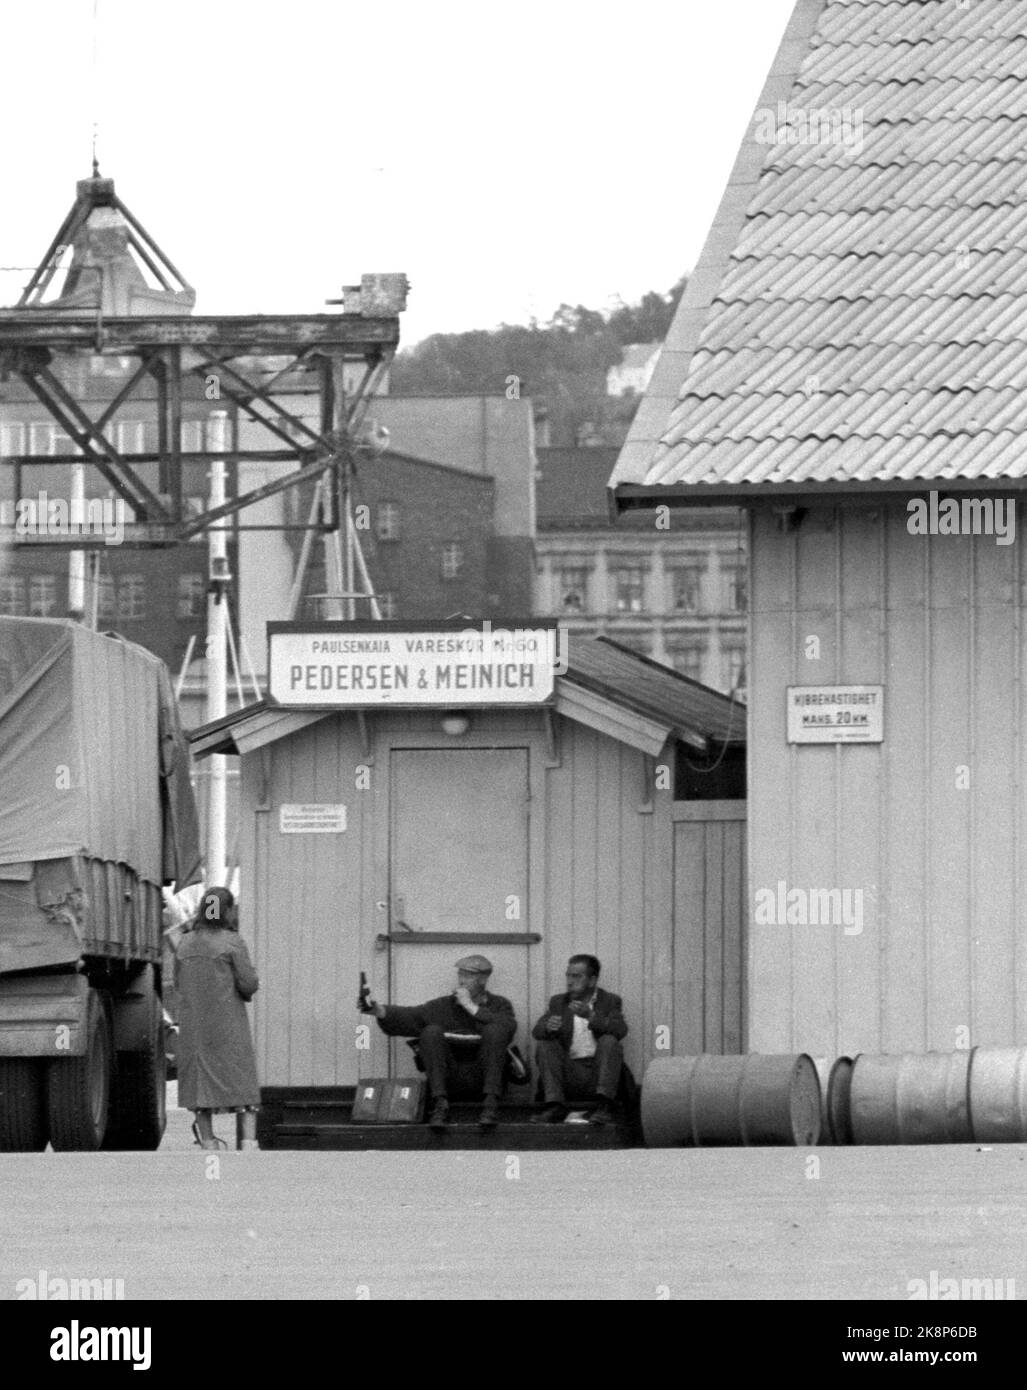 Oslo à l'été 1962. Une promenade le long de l'Akerselva de OS à OS. Au hangar n° 60 de Pedersen et Meinich sur le quai à 'Køla-Pålsen' (officiellement Paulsenkaia), deux travailleurs ont trouvé un endroit où ils peuvent manger la boîte à lunch et partager une bouteille, et ils sont heureux de partager une dame qui passe aussi .. Photo: Åge Storløkken / actuel / NTB. Lok physique: Actuel 1962 No. 37: Akerselva, vous avez vieux vous gris. Banque D'Images